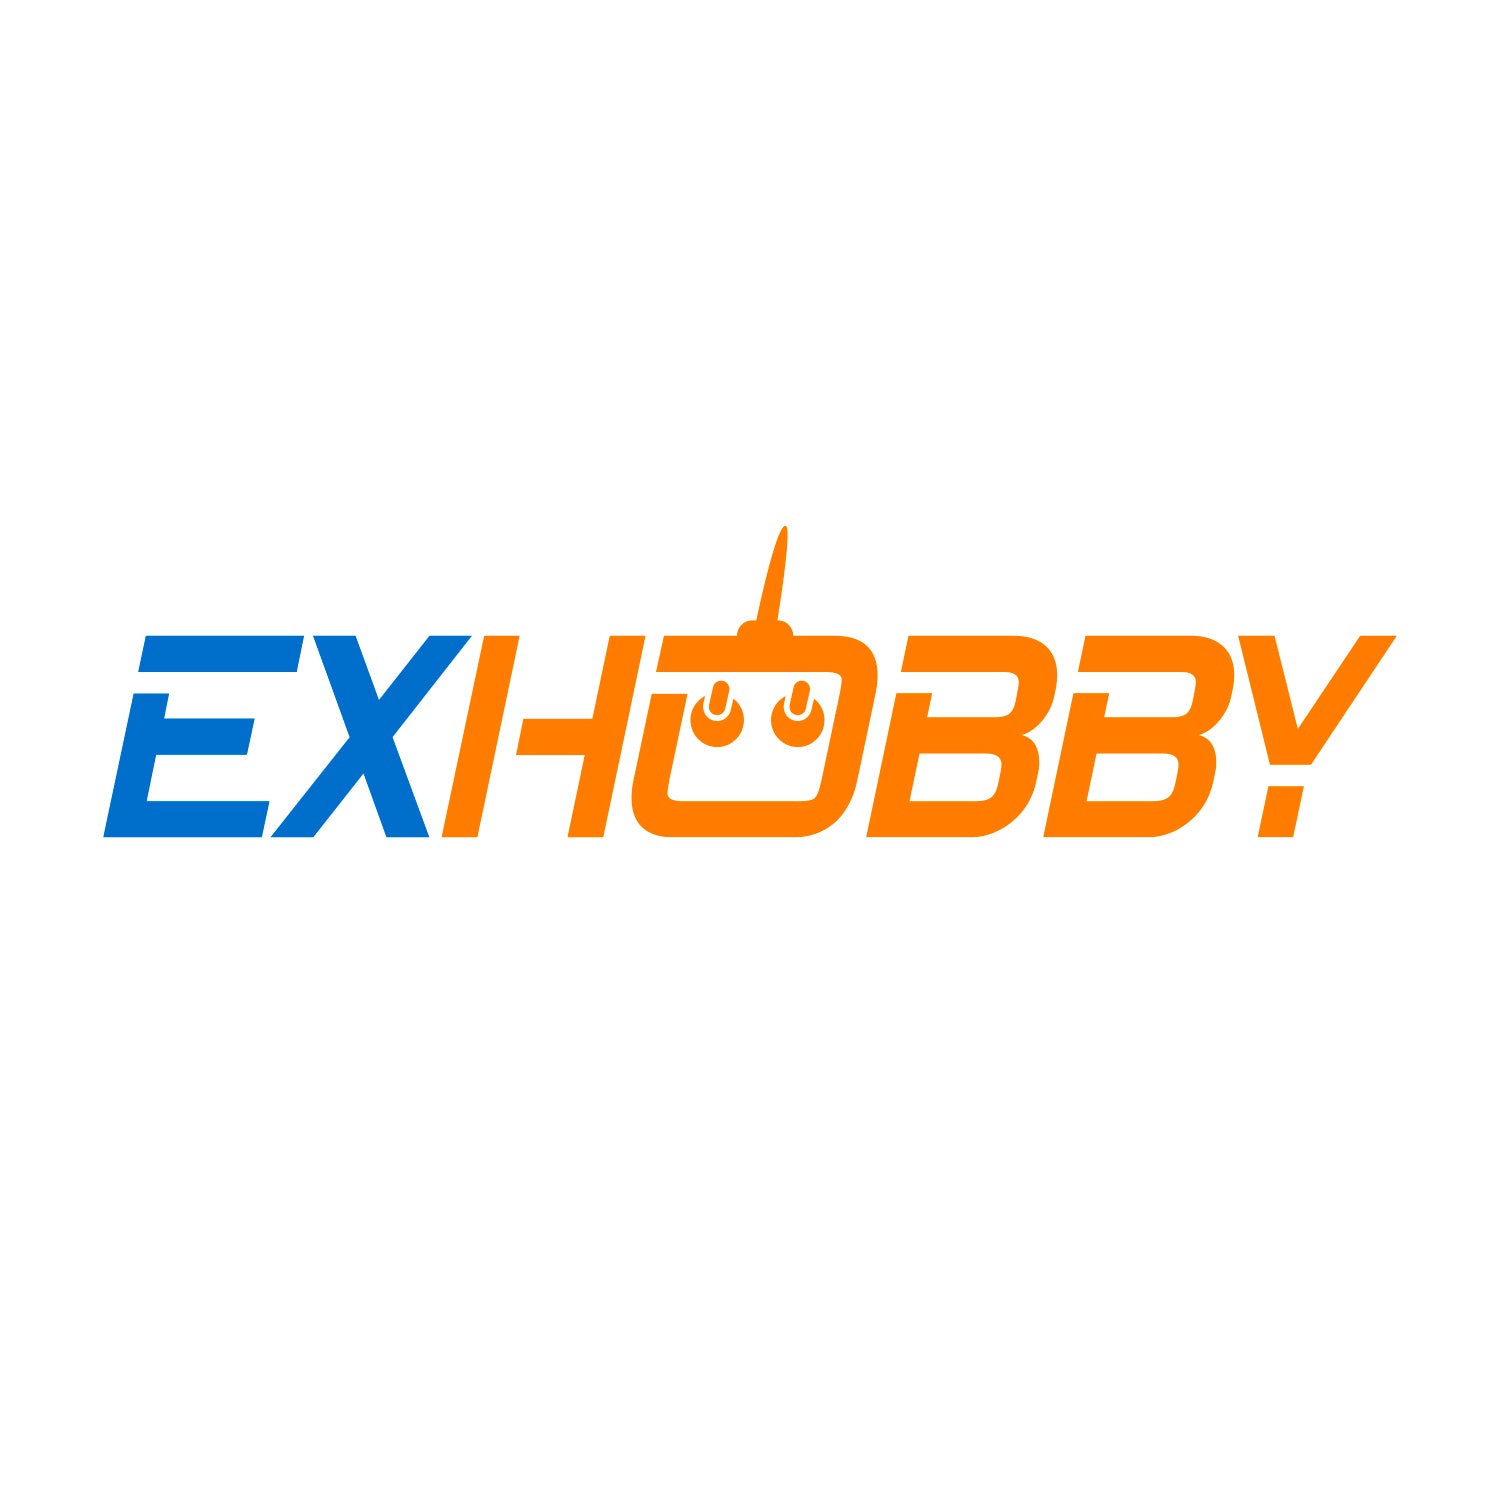 EXHOBBY